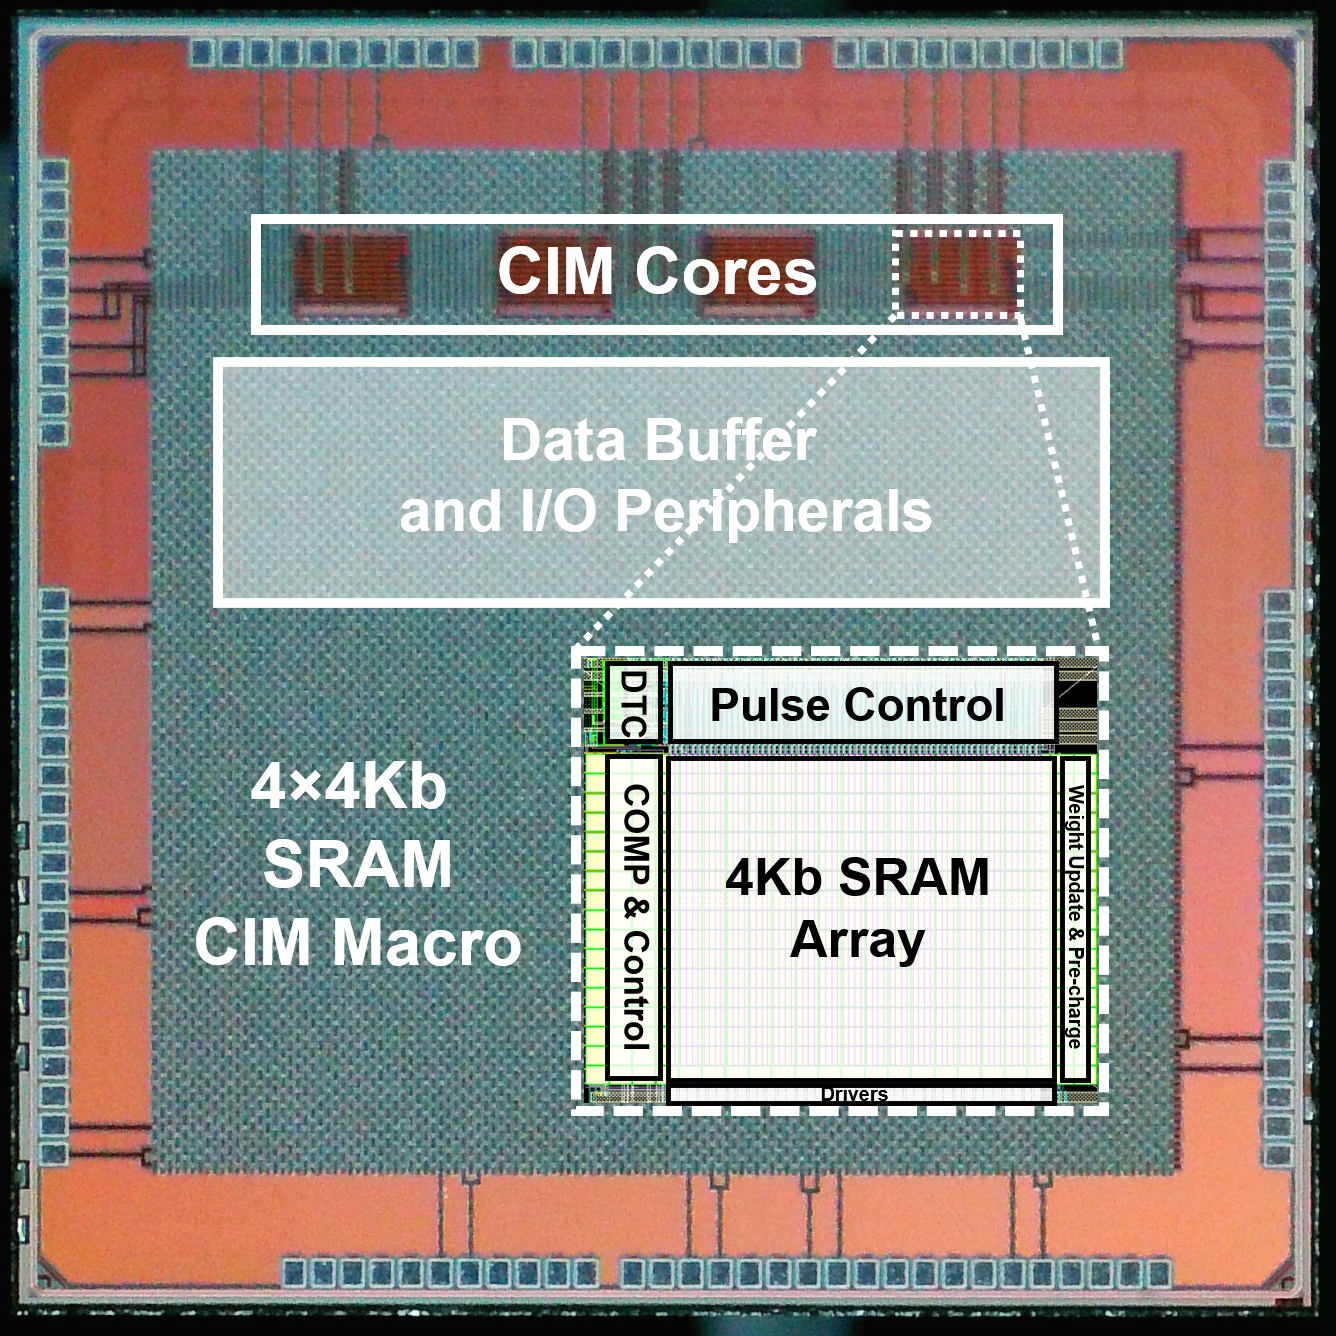 SRAM-based Computing-in-Memory (CIM)